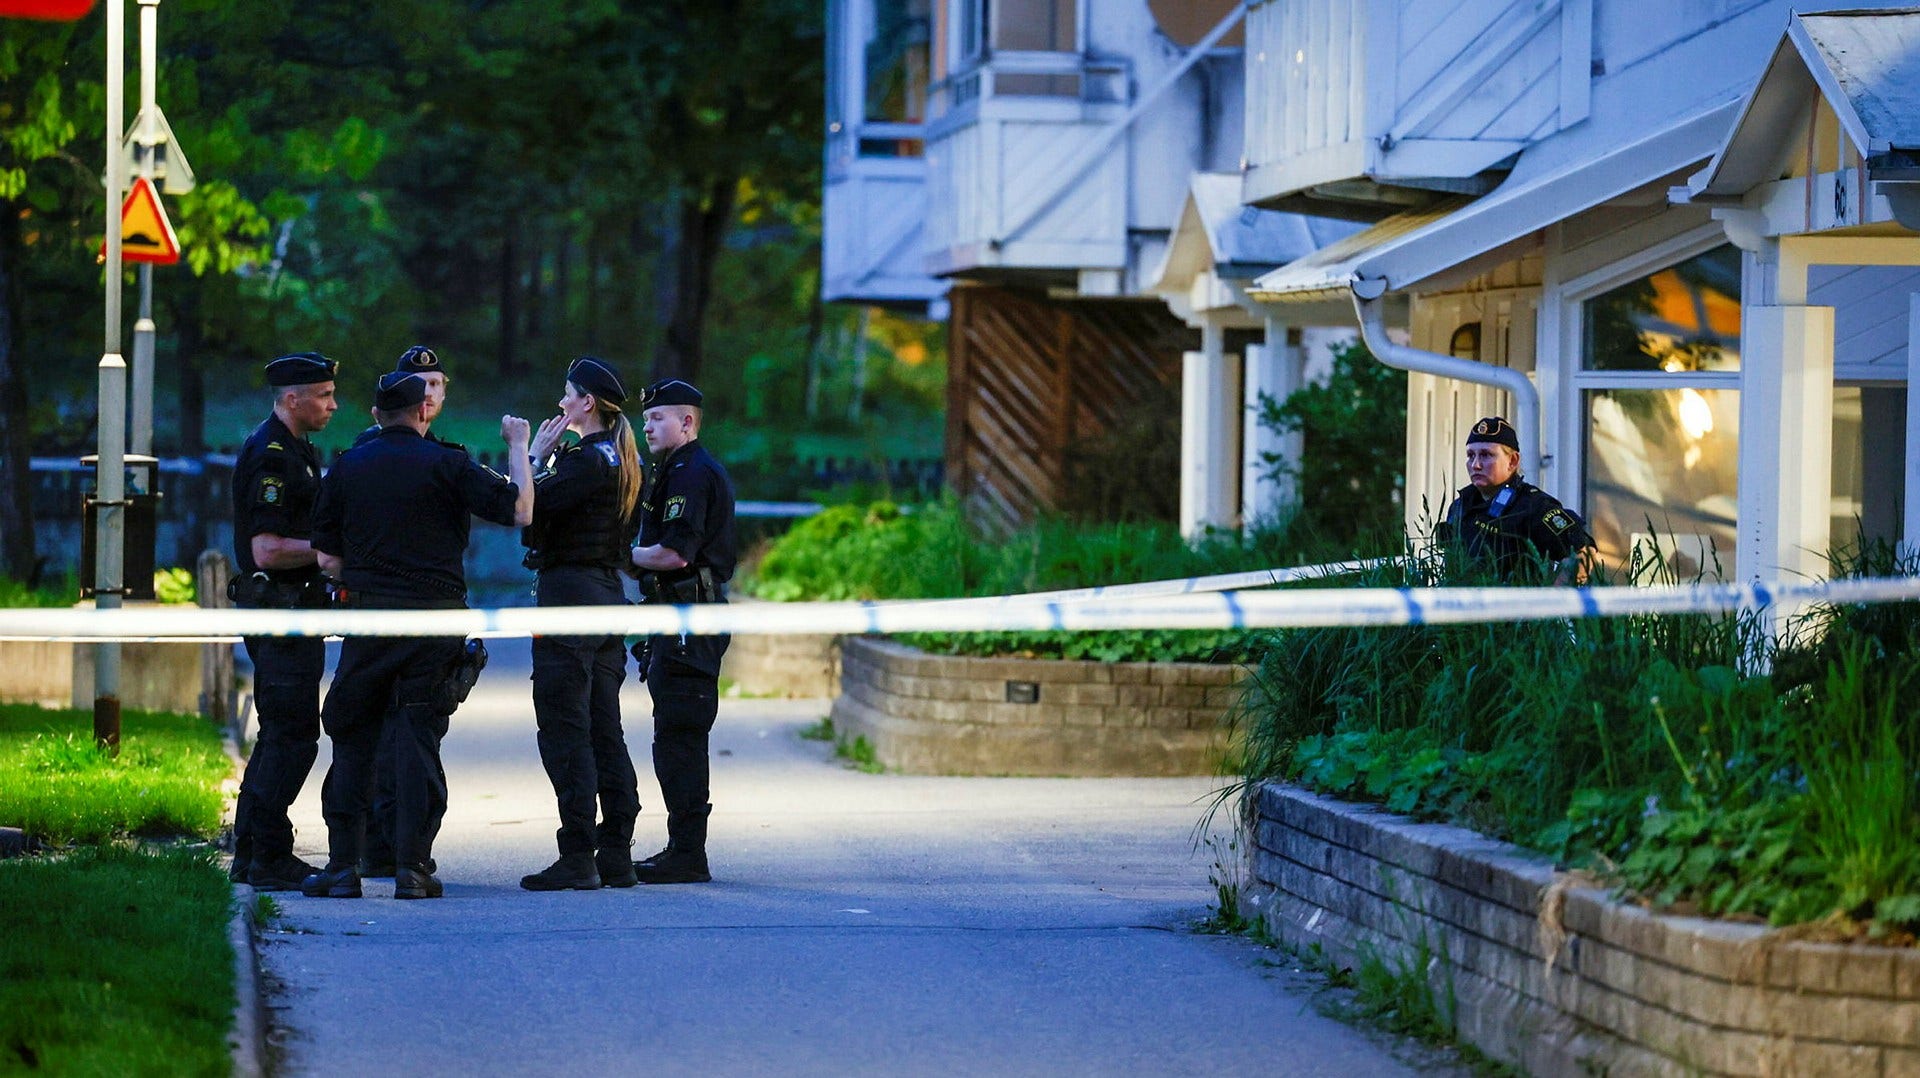 I helgen besköts en dörr till en lägenhet i Flemingsberg. En man i 60-årsåldern skadades svårt och är anhörig till en man som nyligen blev målsägande i en skottlossning söder om Stockholm, enligt DN:s uppgifter.